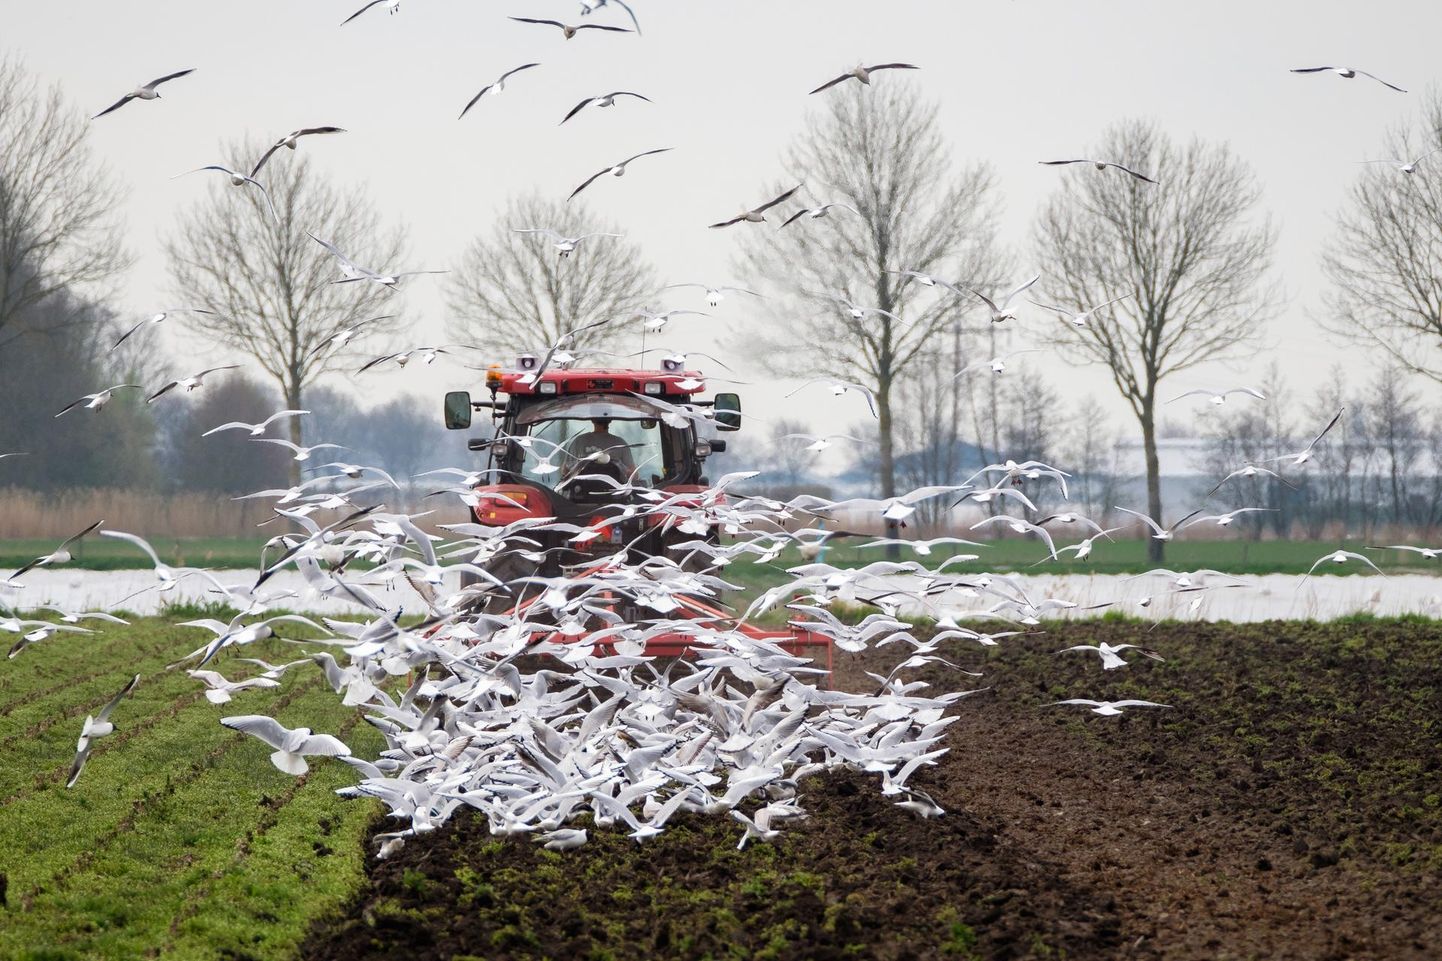 Kevadiste mullatööde ajal nopivad traktori järel lendavad kajakad ära kõik mullapinnale pööratud vihmaussid. Nende kohalolu näitab, et vähemasti on mullas elu.